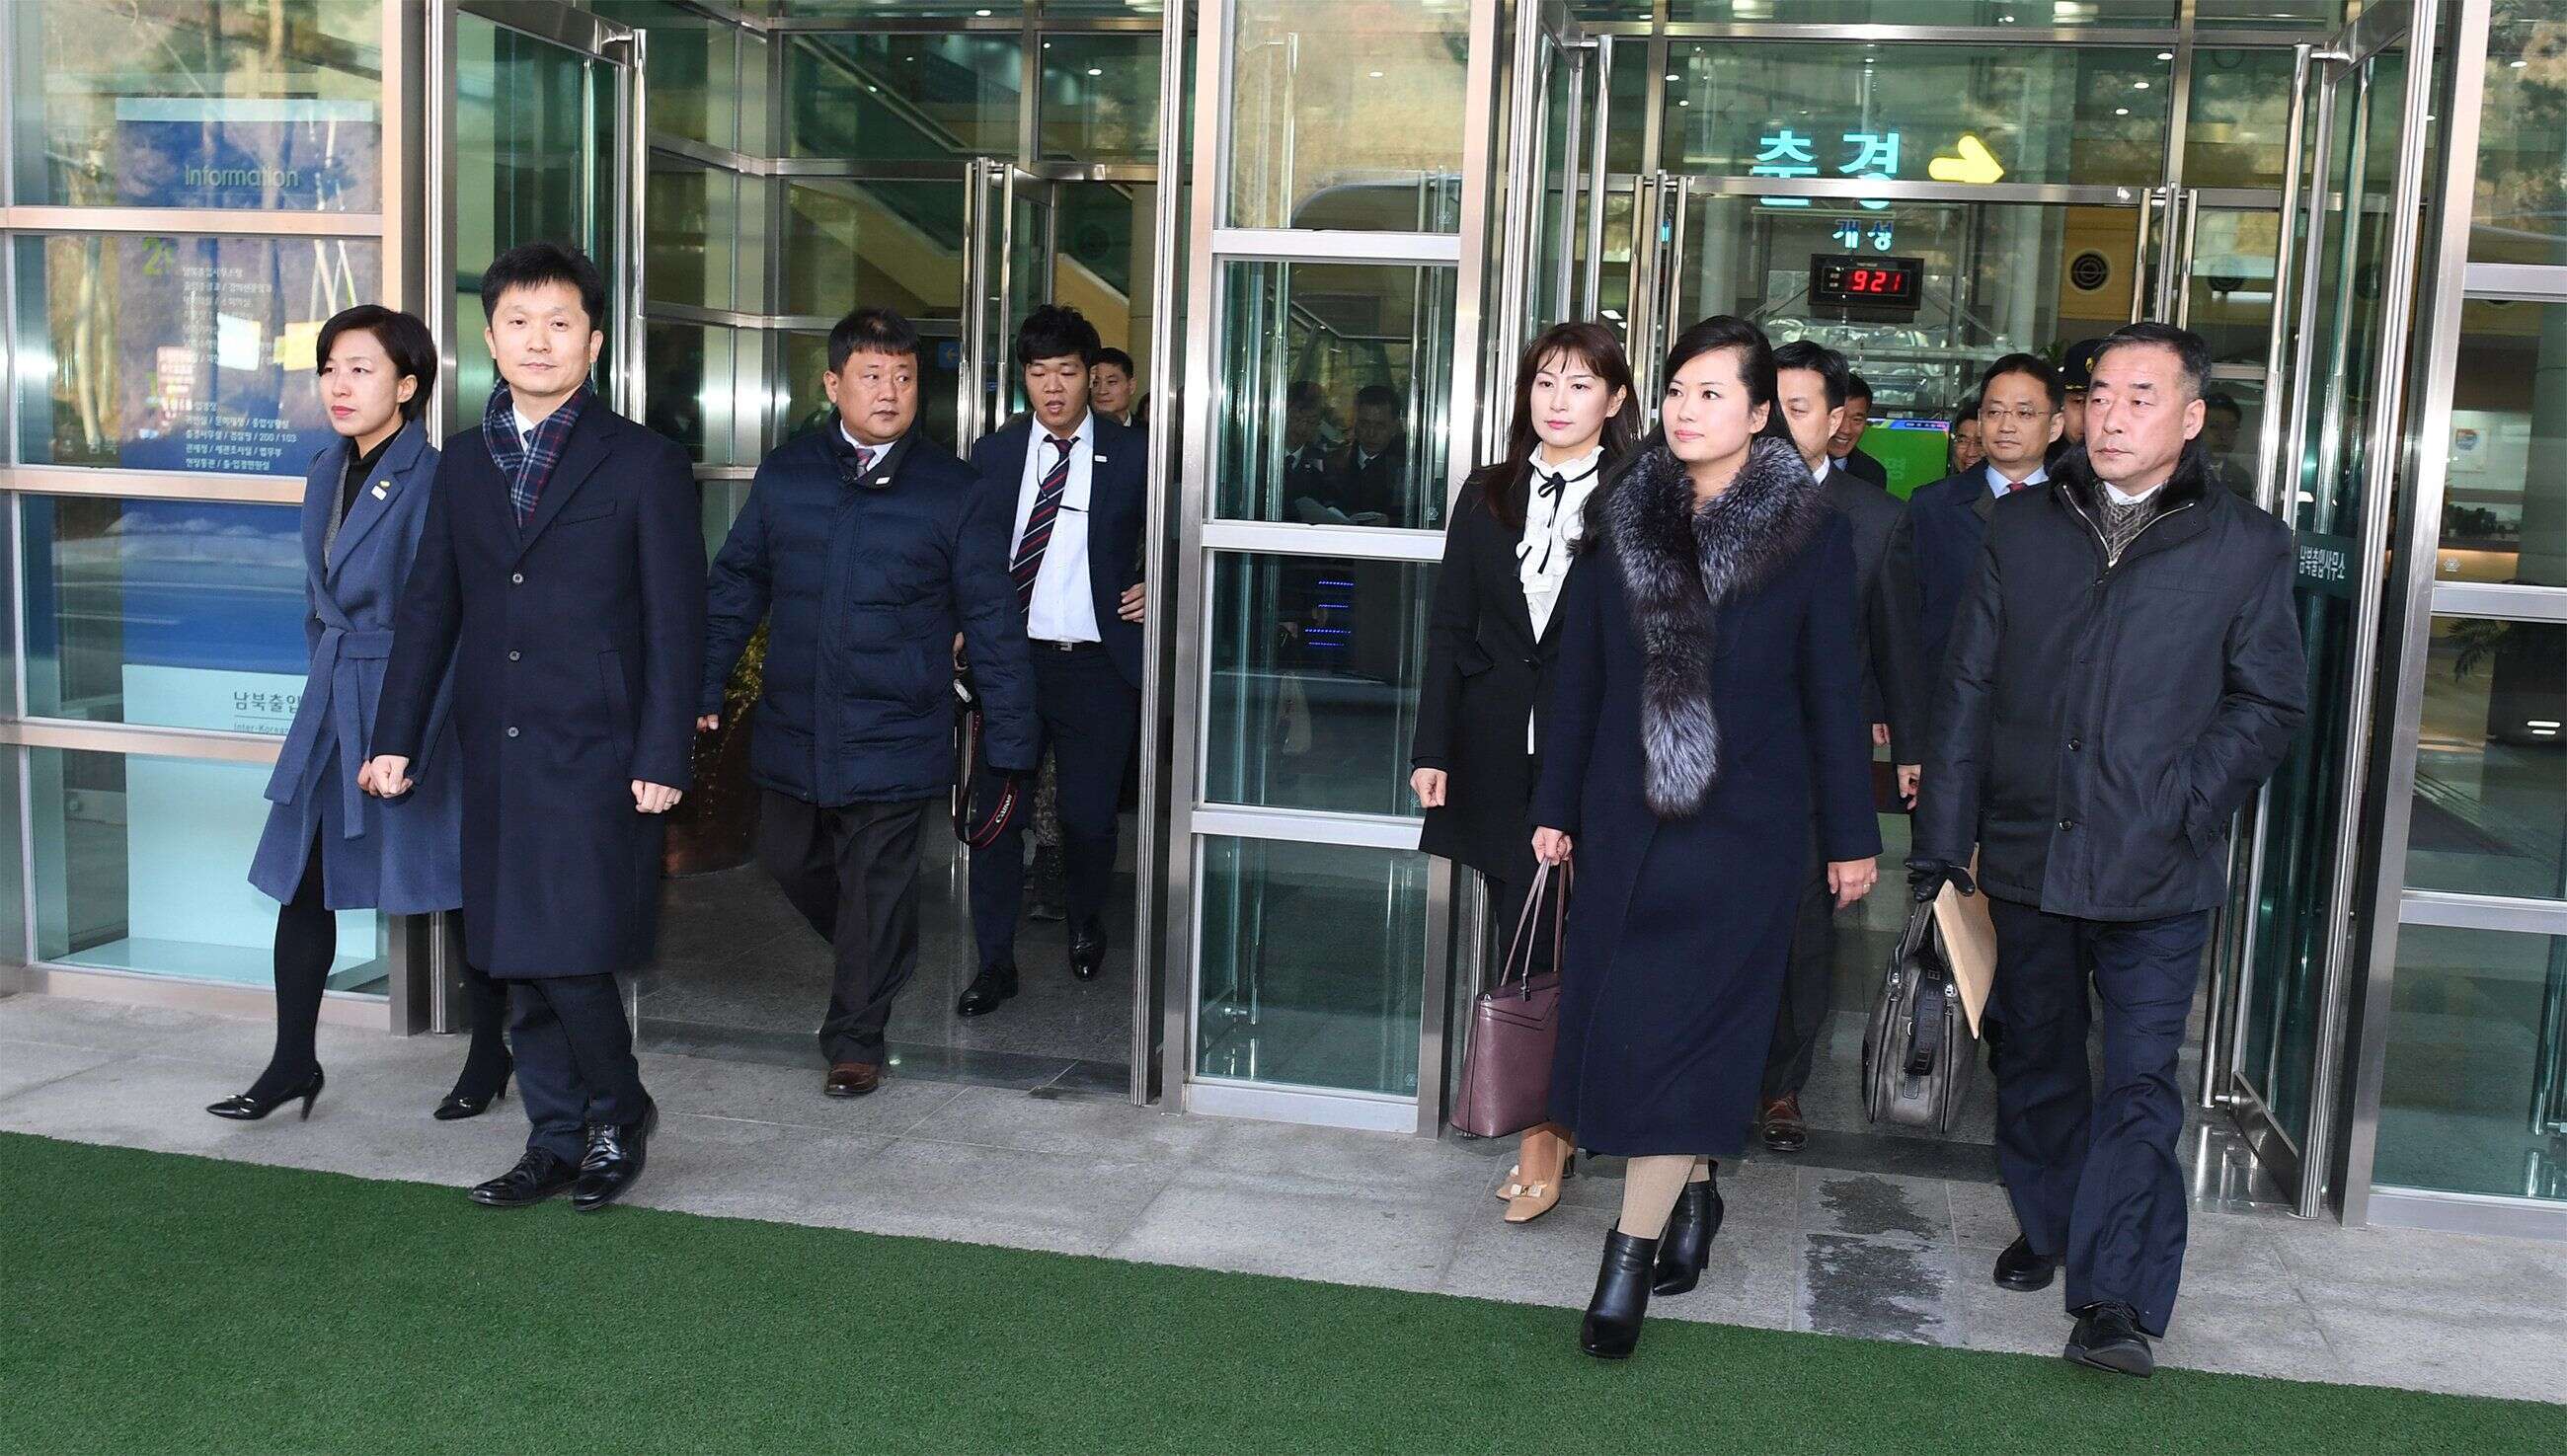 Hyon Song-Wol et la délégation nord-coréenne arrivent au bureau de transit entre les deux Corées, près de la zone démilitarisée, le 21 janvier.